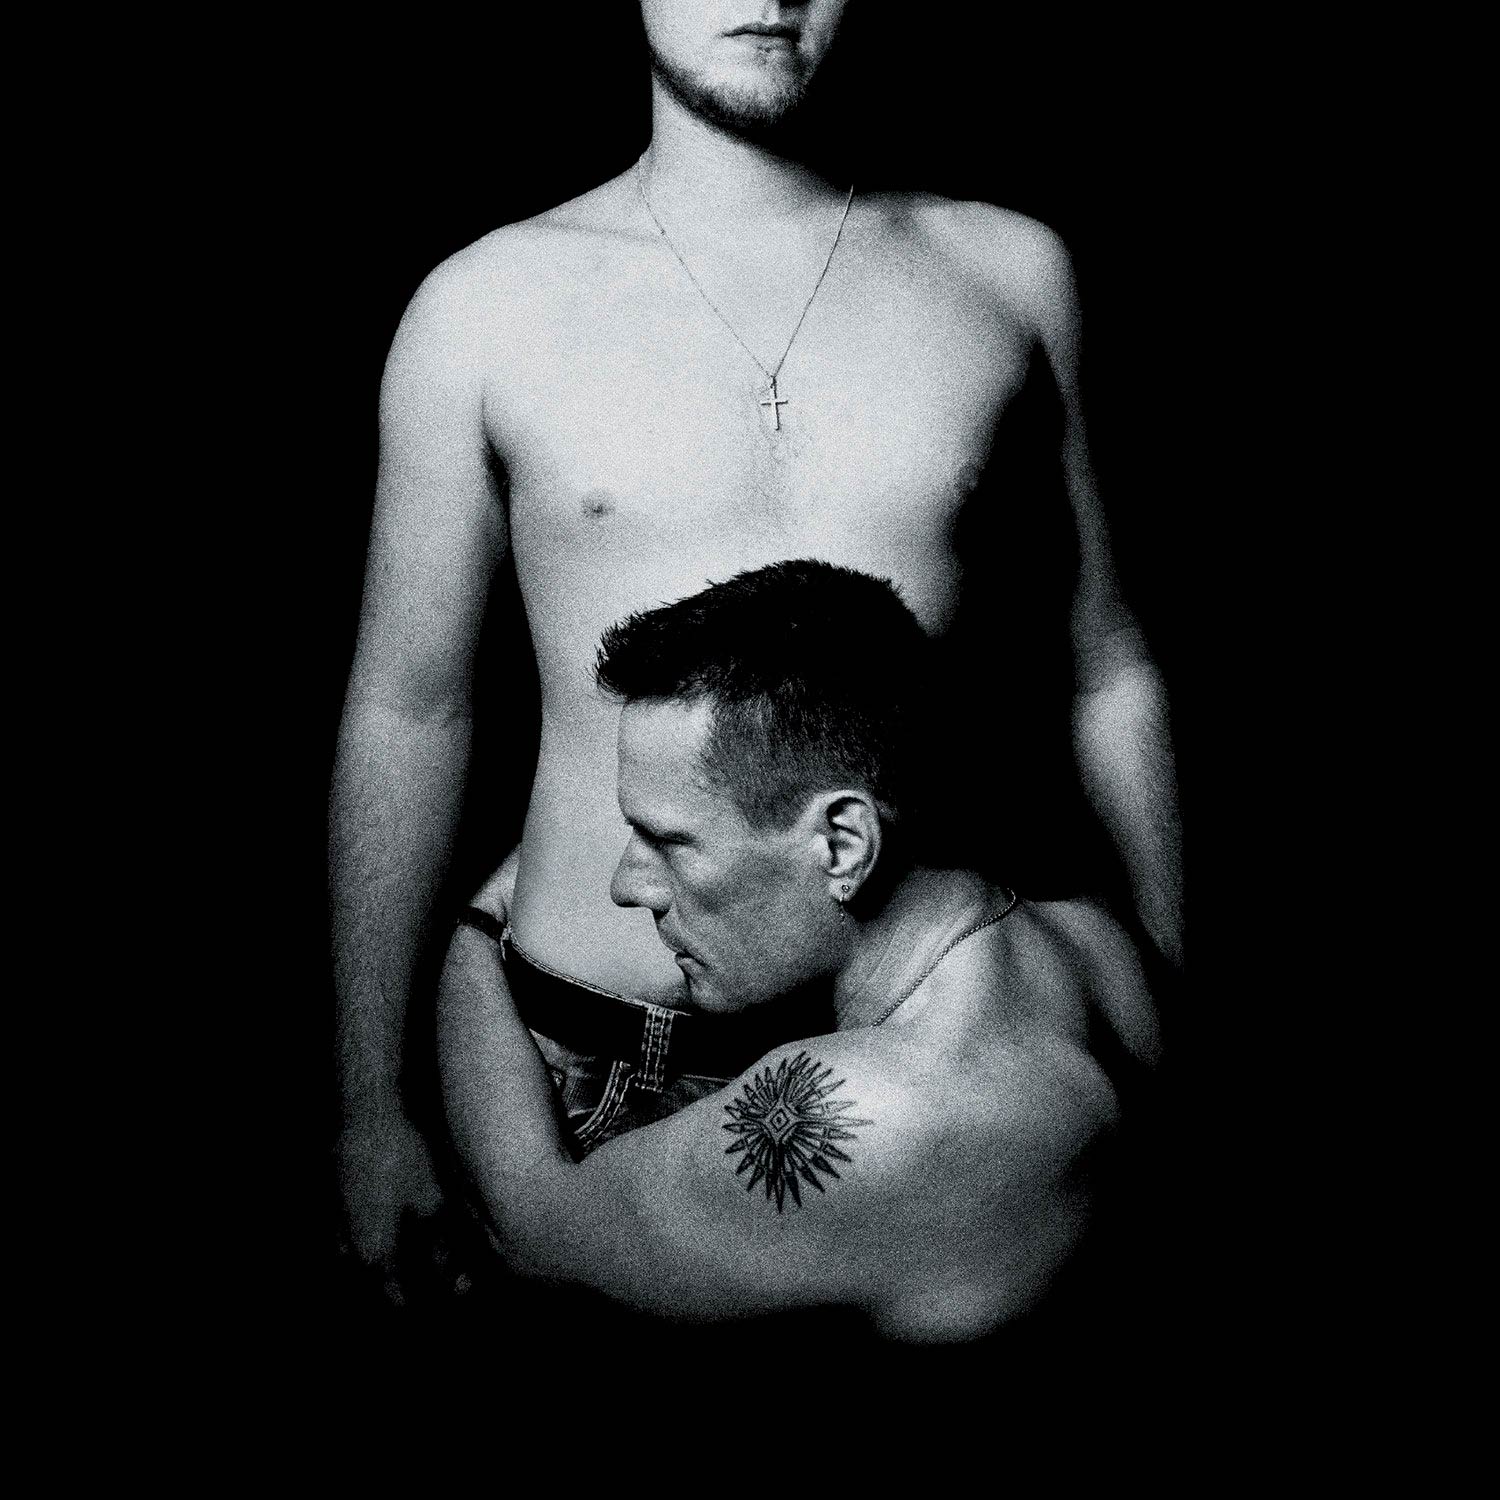 U2: Songs of innocence, la portada del disco